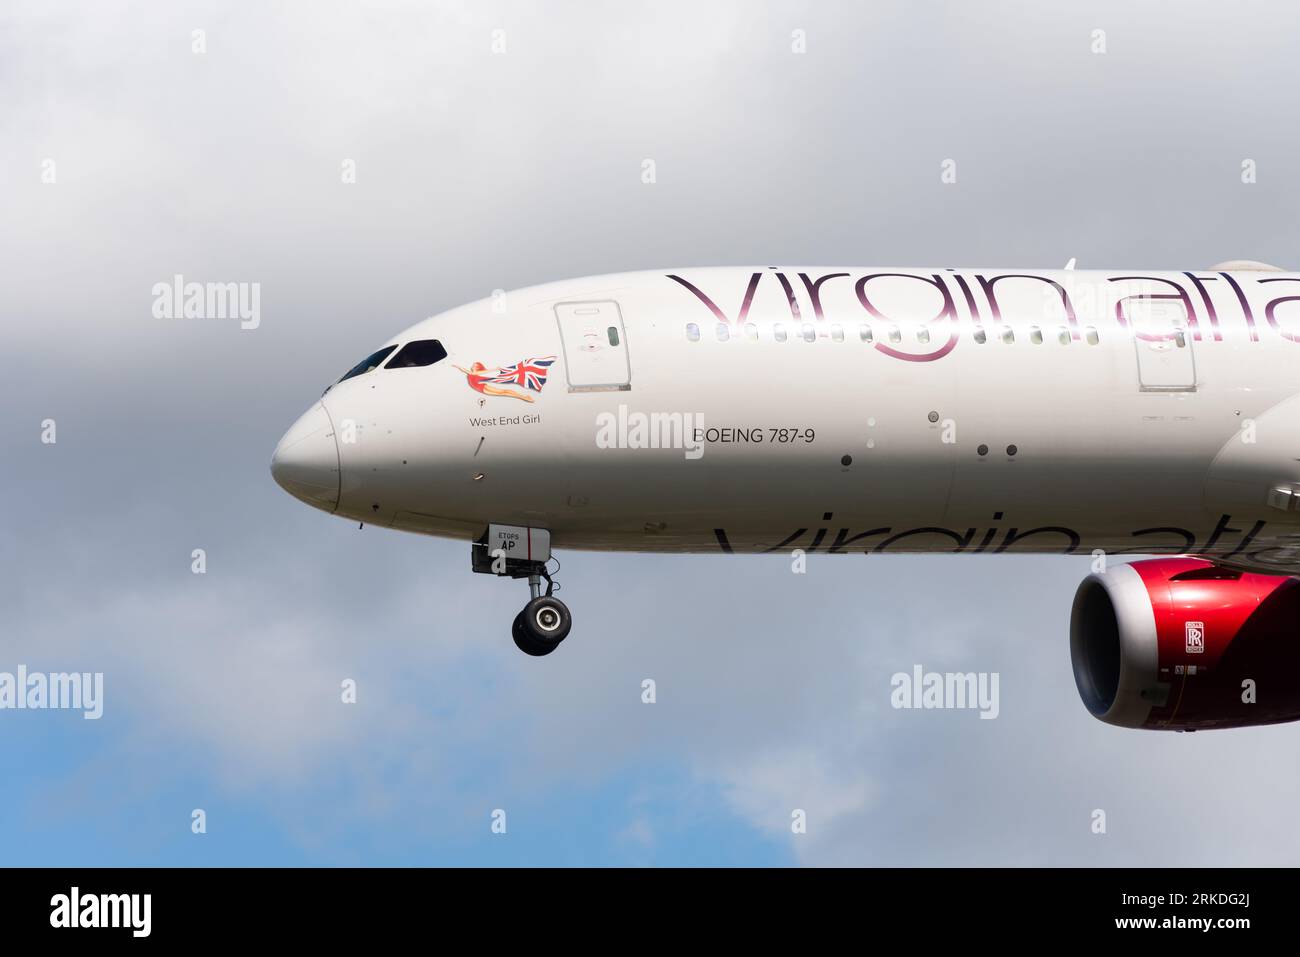 Virgin Atlantic Boeing 787-9 Dreamliner jet avión en la final para aterrizar en el aeropuerto de Londres Heathrow, Reino Unido. Llamada West End Girl. Scarlet lady nose art Foto de stock